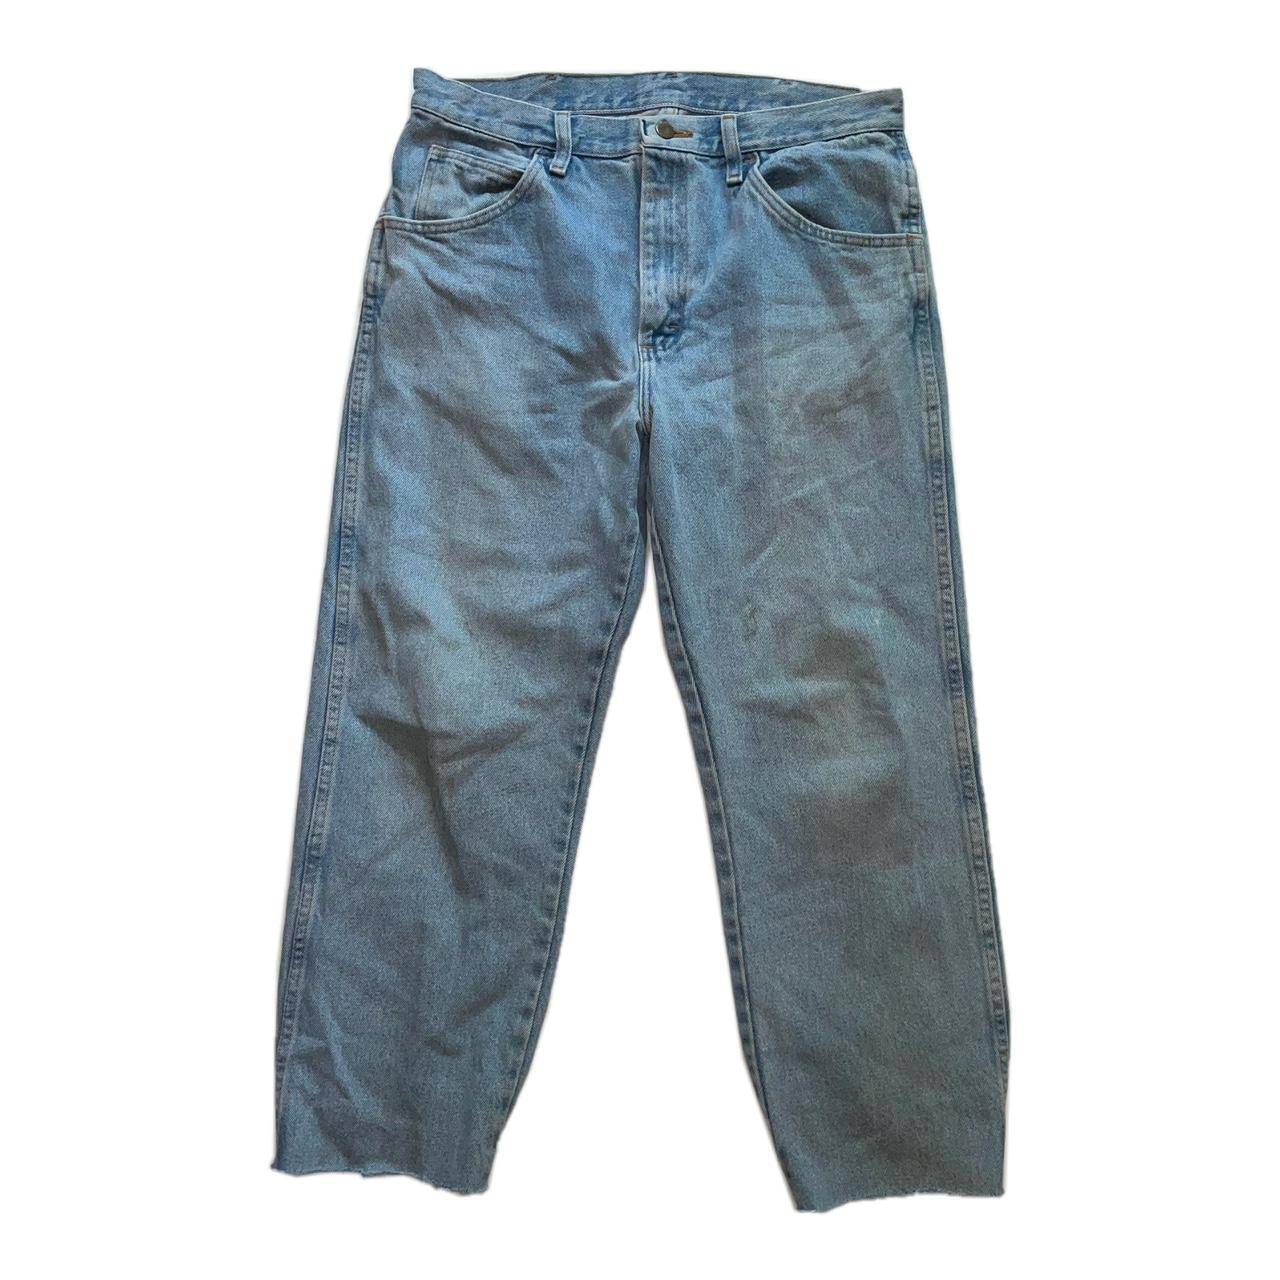 classic fit unbranded denim jeans. sized 33x30 fit... - Depop